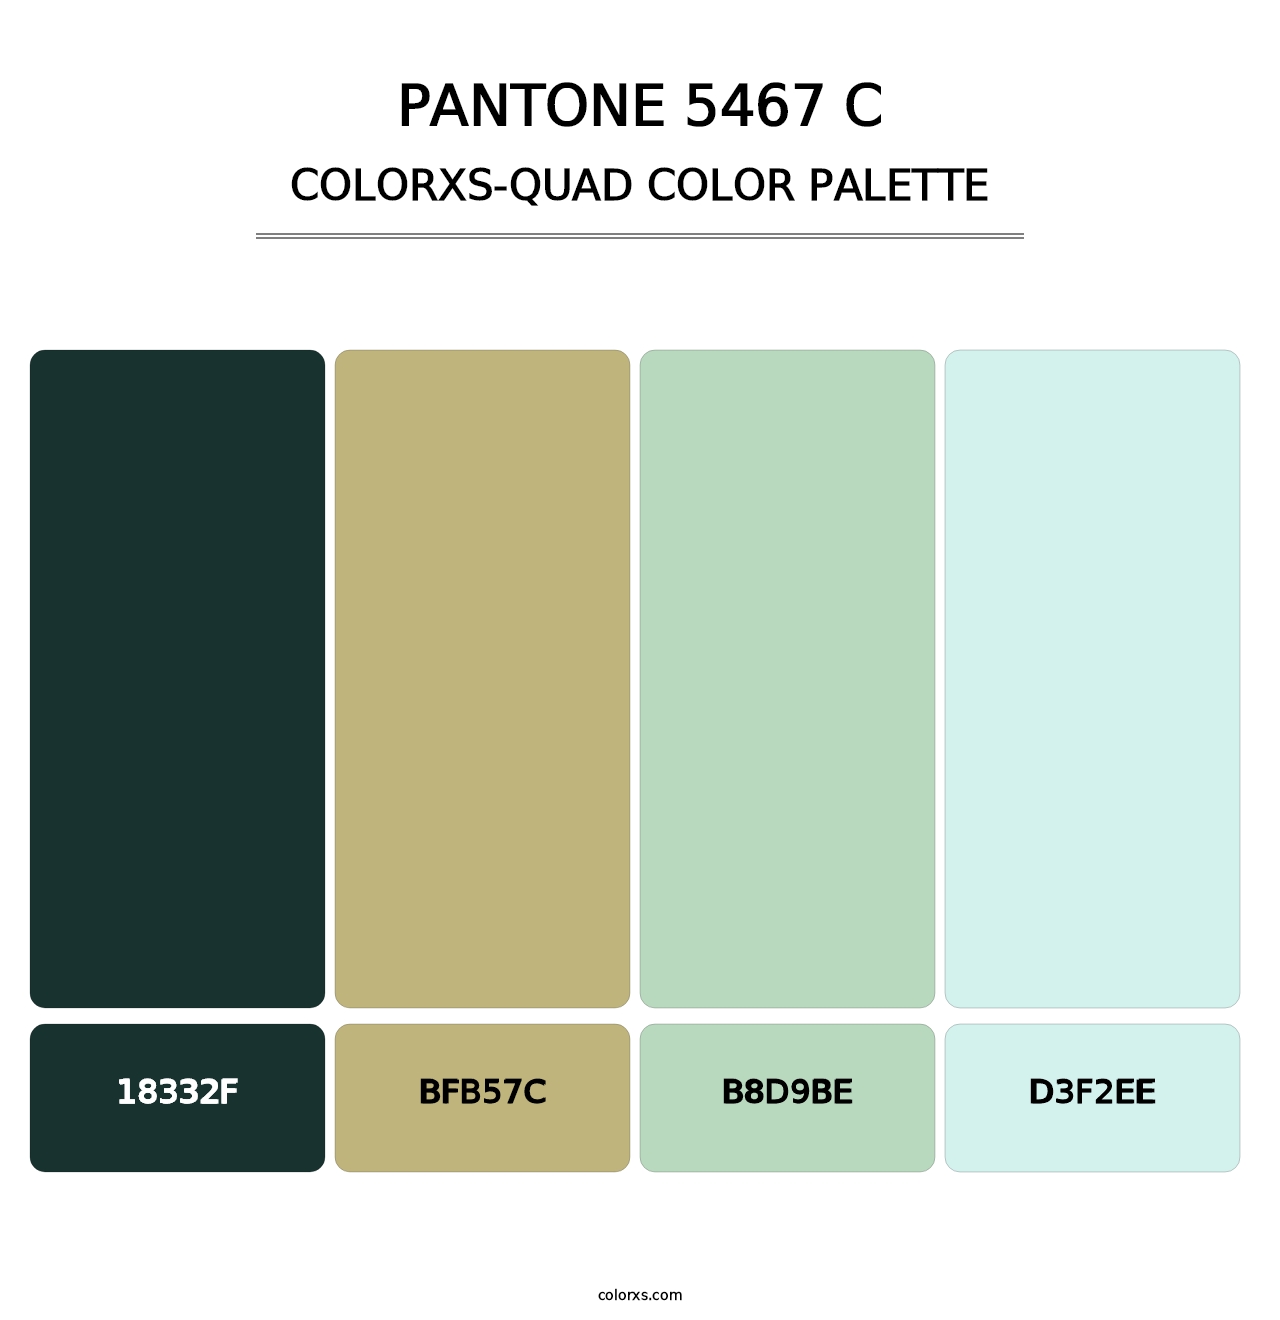 PANTONE 5467 C - Colorxs Quad Palette